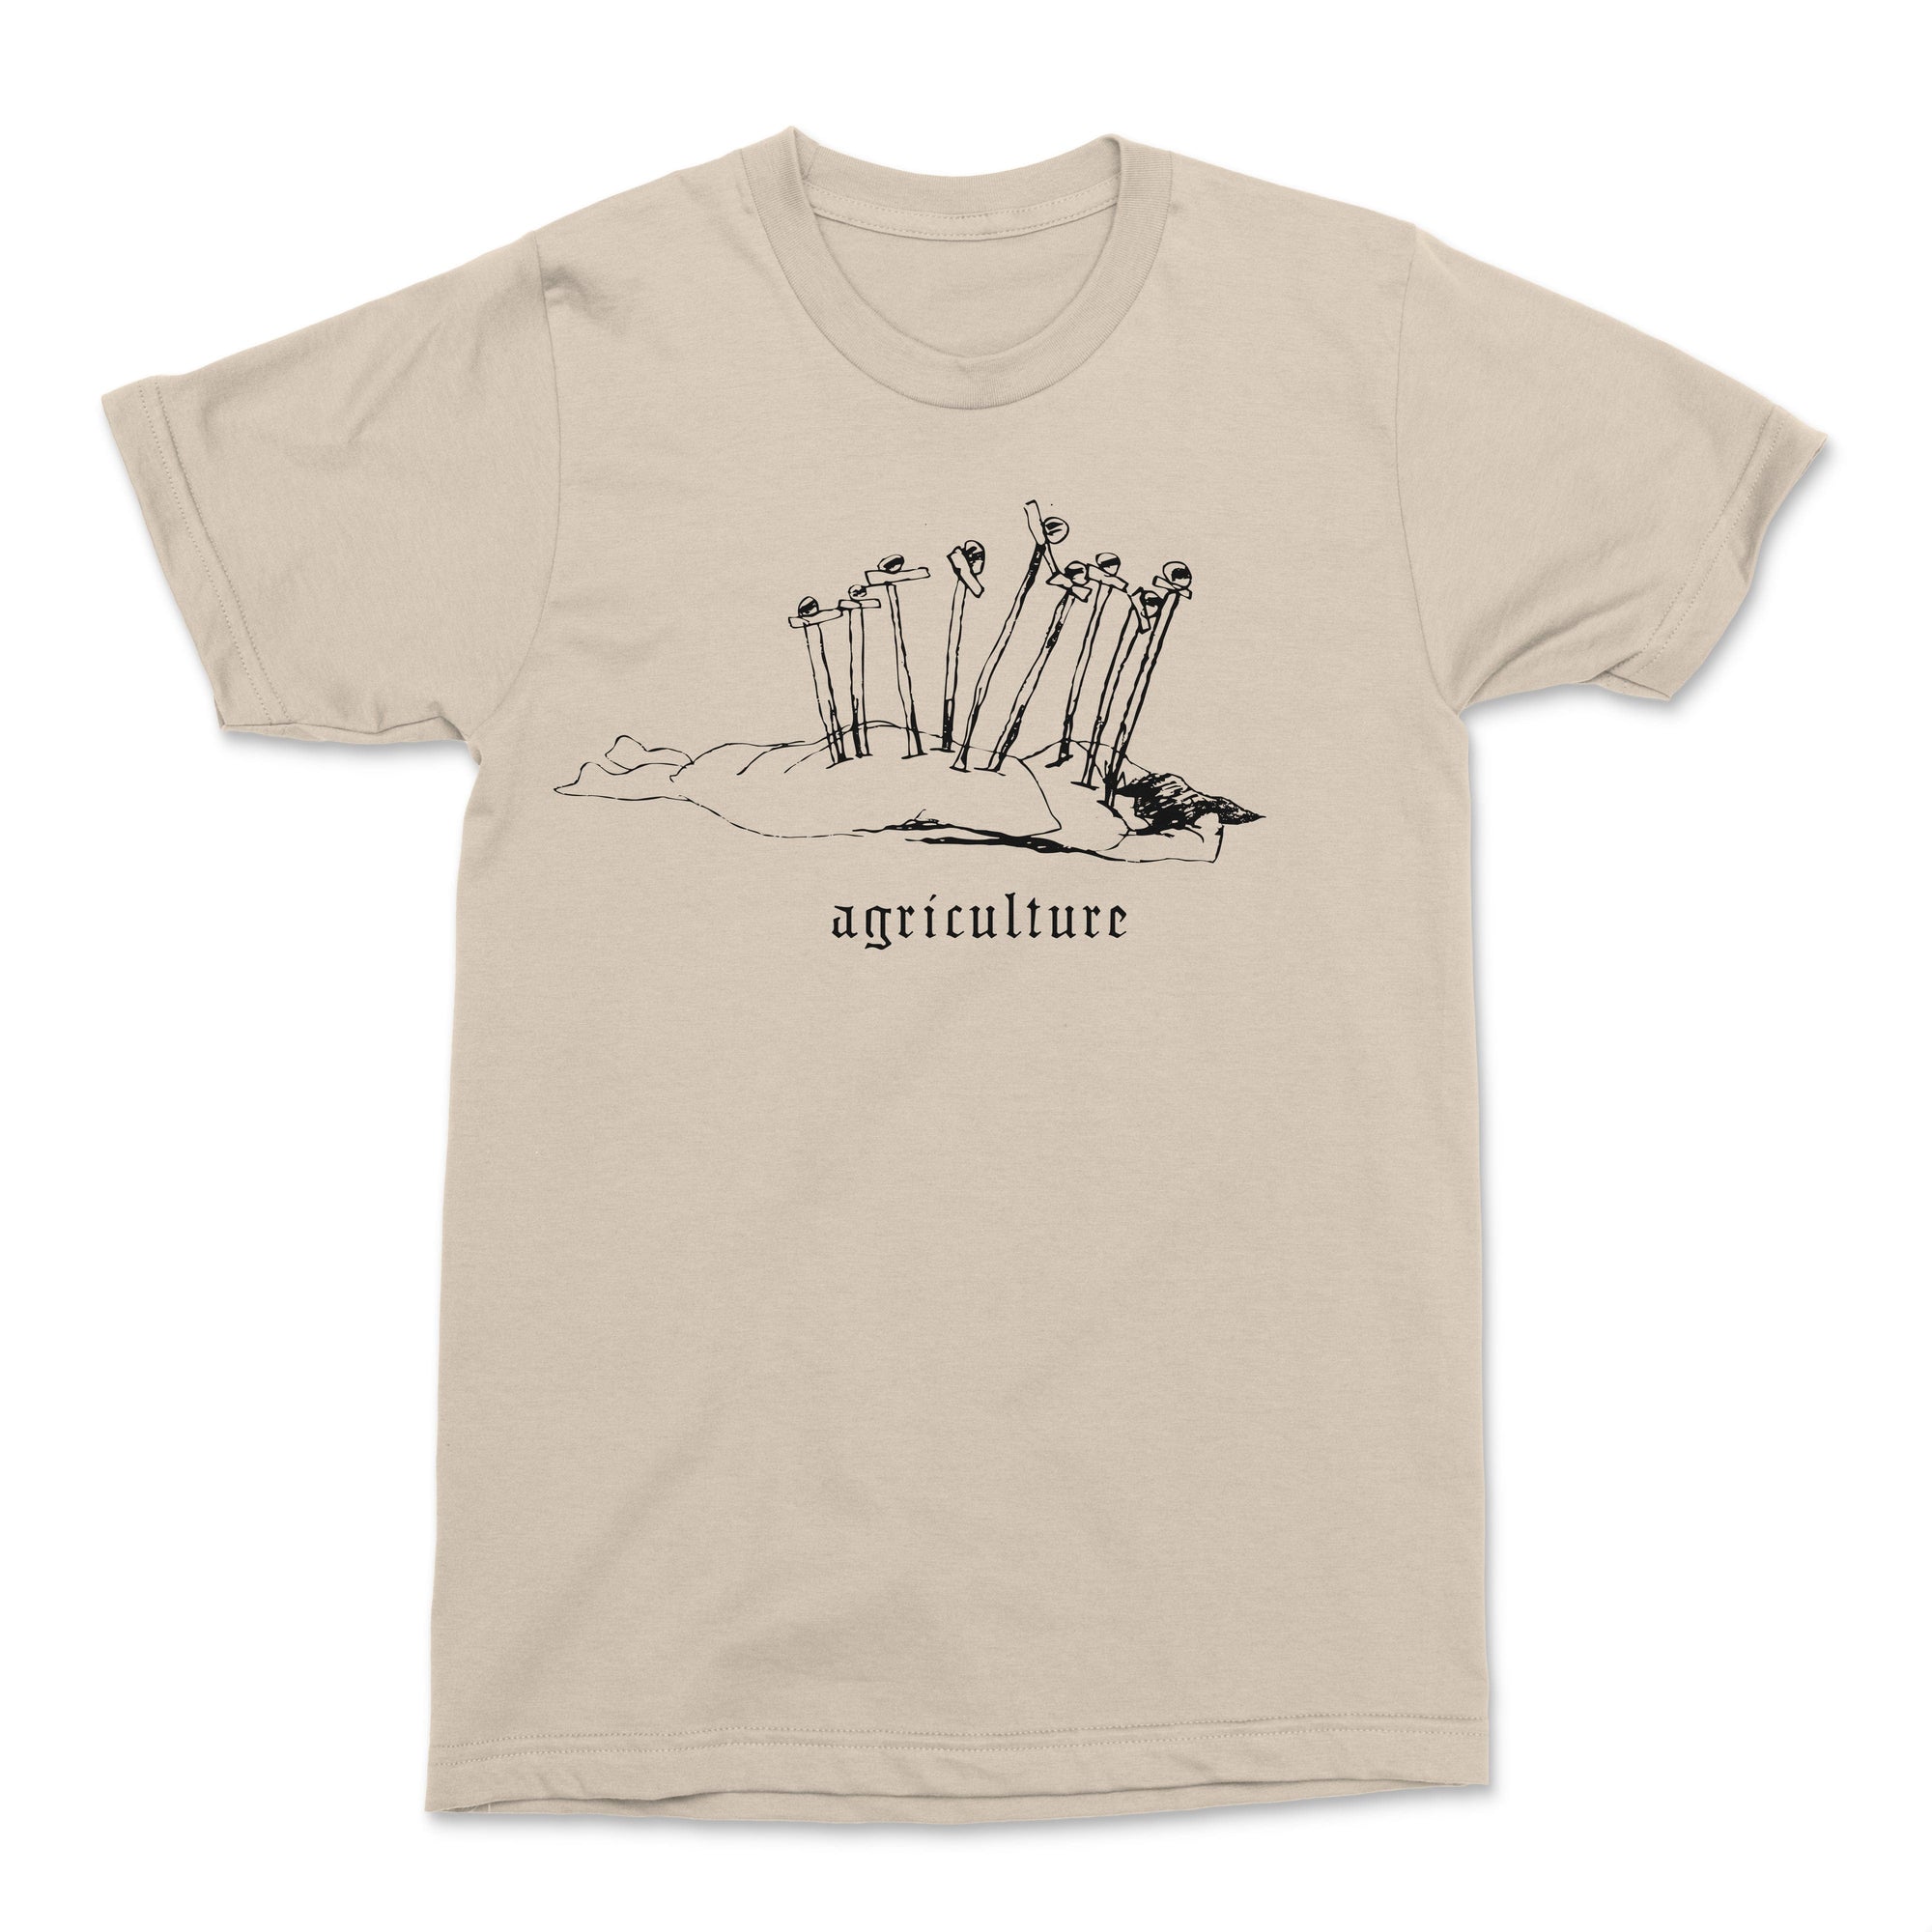 The Flenser Apparel Agriculture "Nine of Swords" Shirt